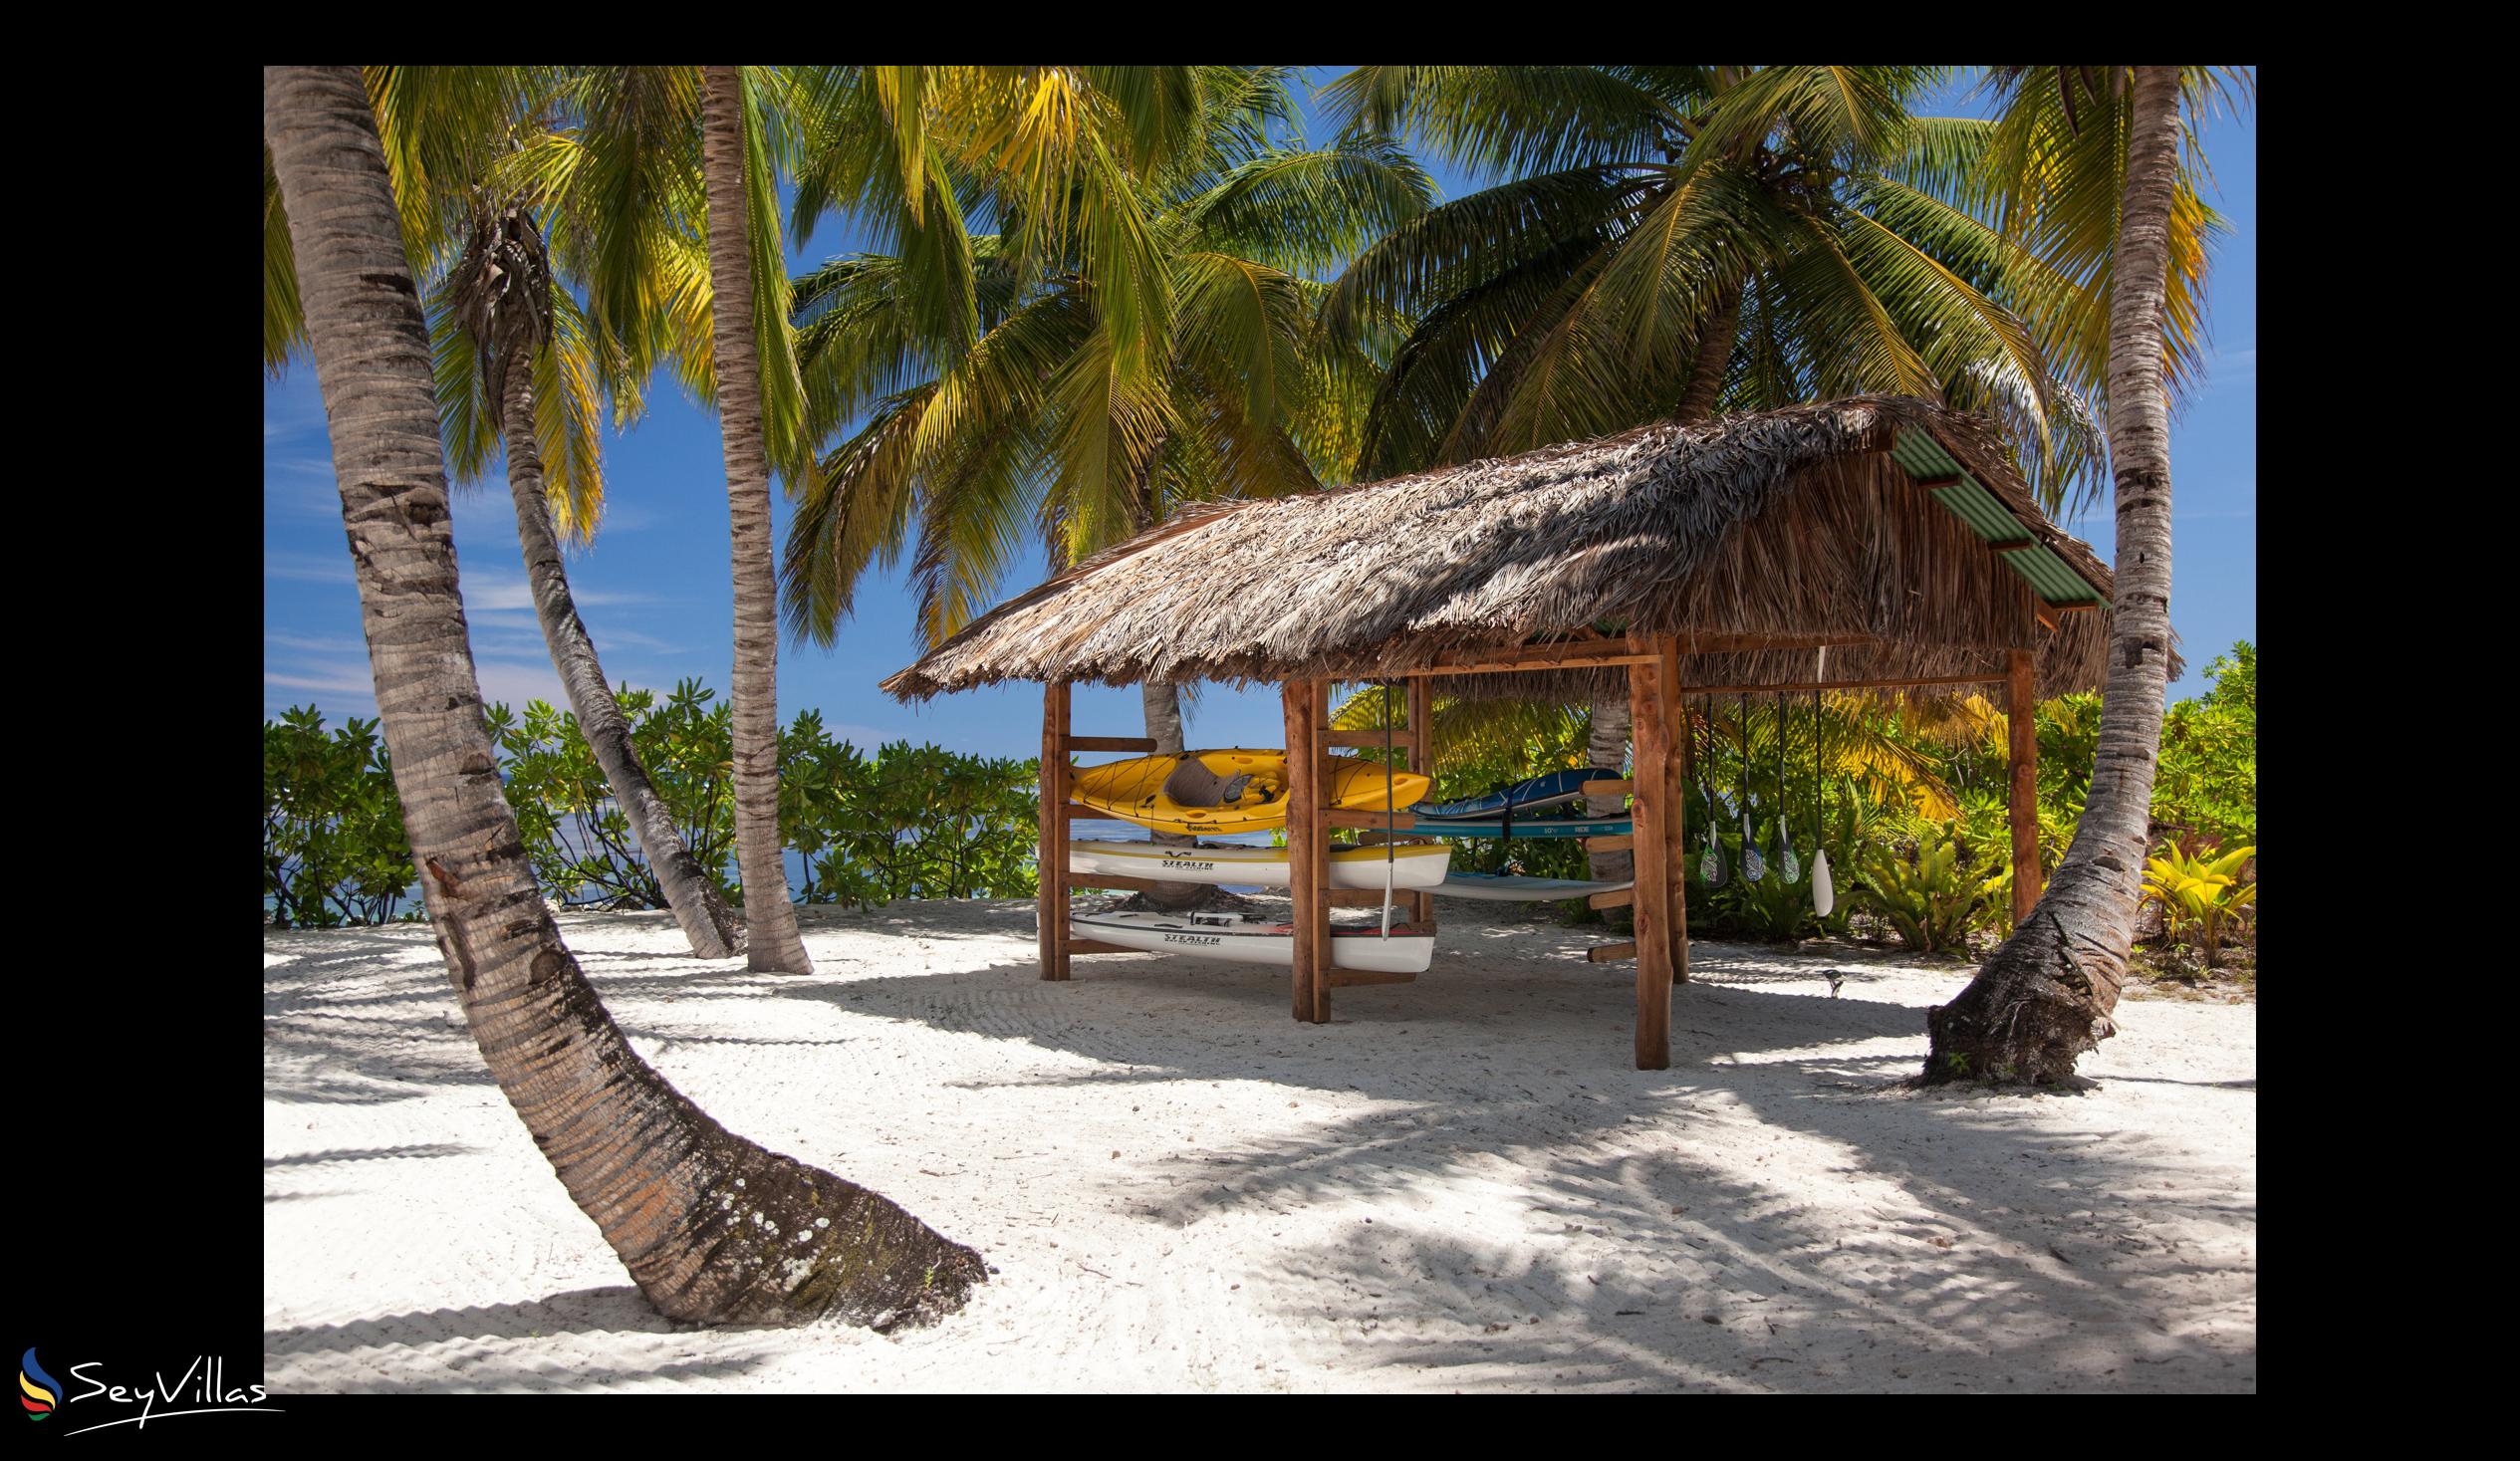 Foto 38: Alphonse Island Lodge - Aussenbereich - Alphonse Island (Seychellen)